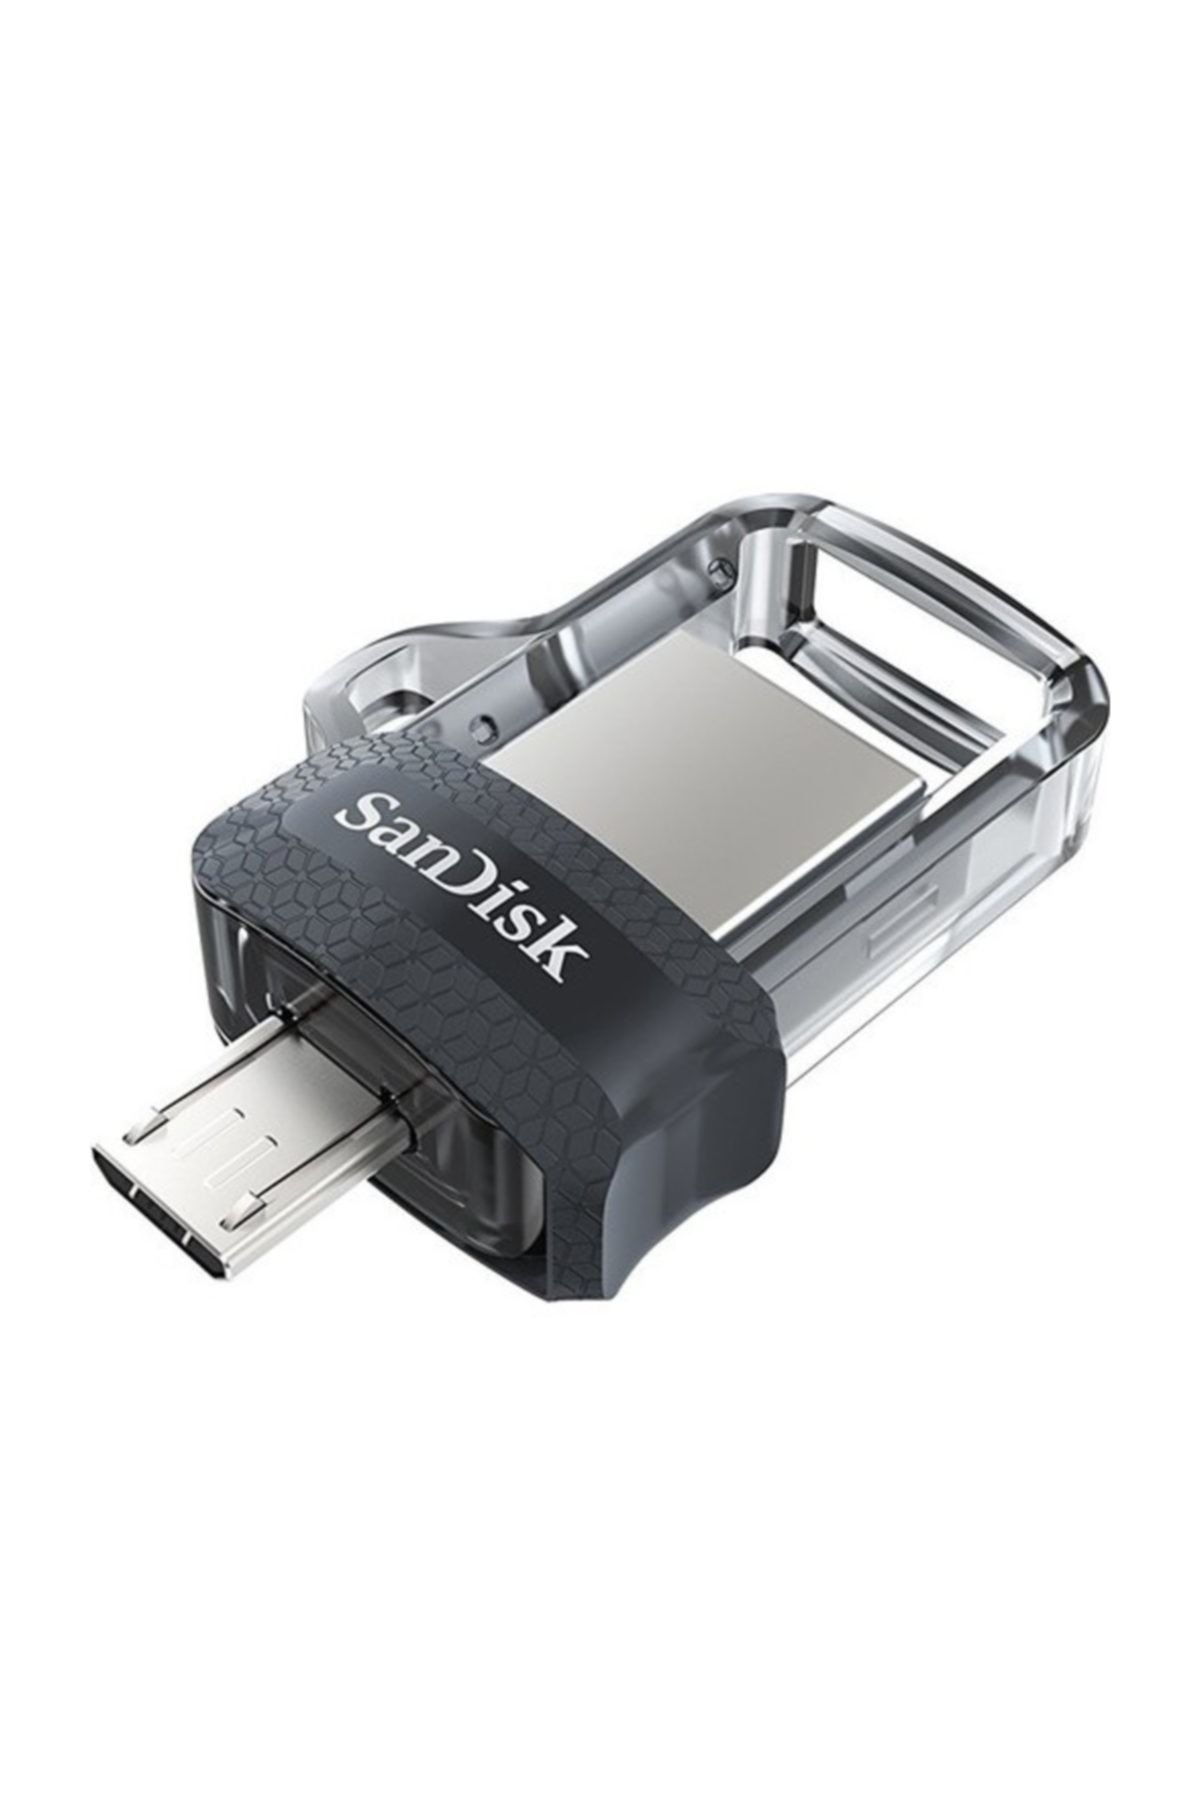 Sandisk Ultra Dual Drive 128GB OTG M3.0 Usb Bellek SDDD3-128G-G46